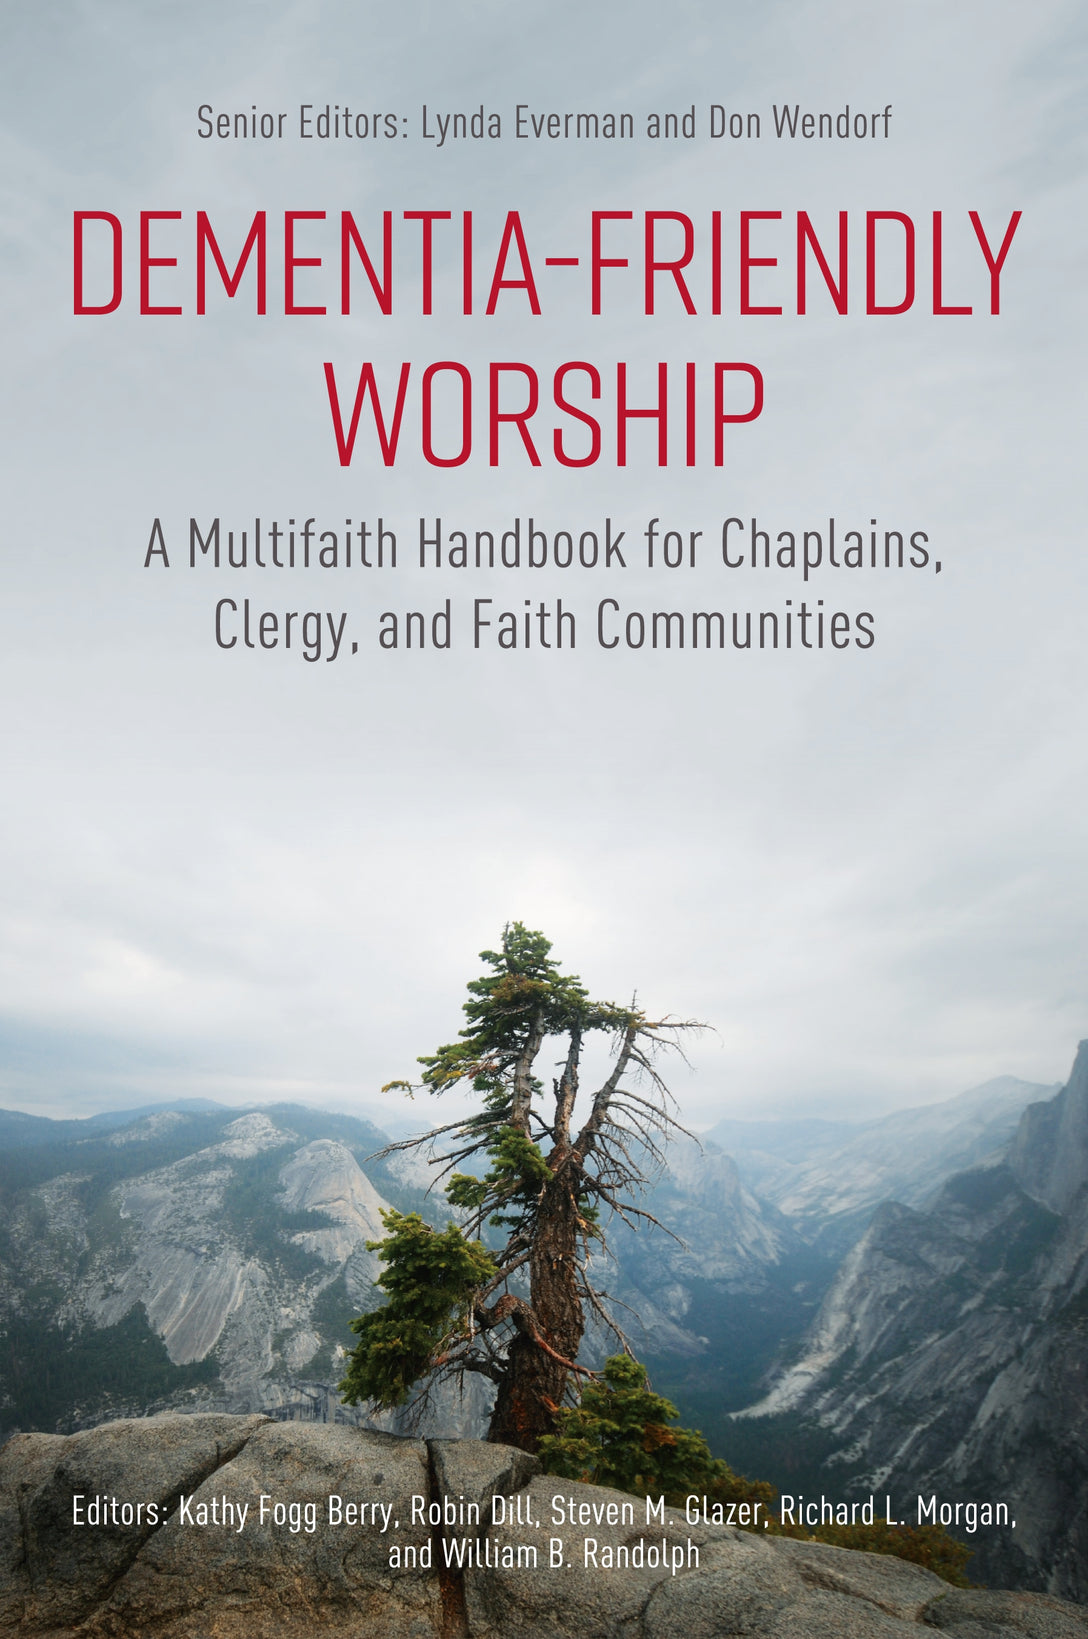 Dementia-Friendly Worship by No Author Listed, Virginia Biggar, Lynda Everman, Steven M. Glazer